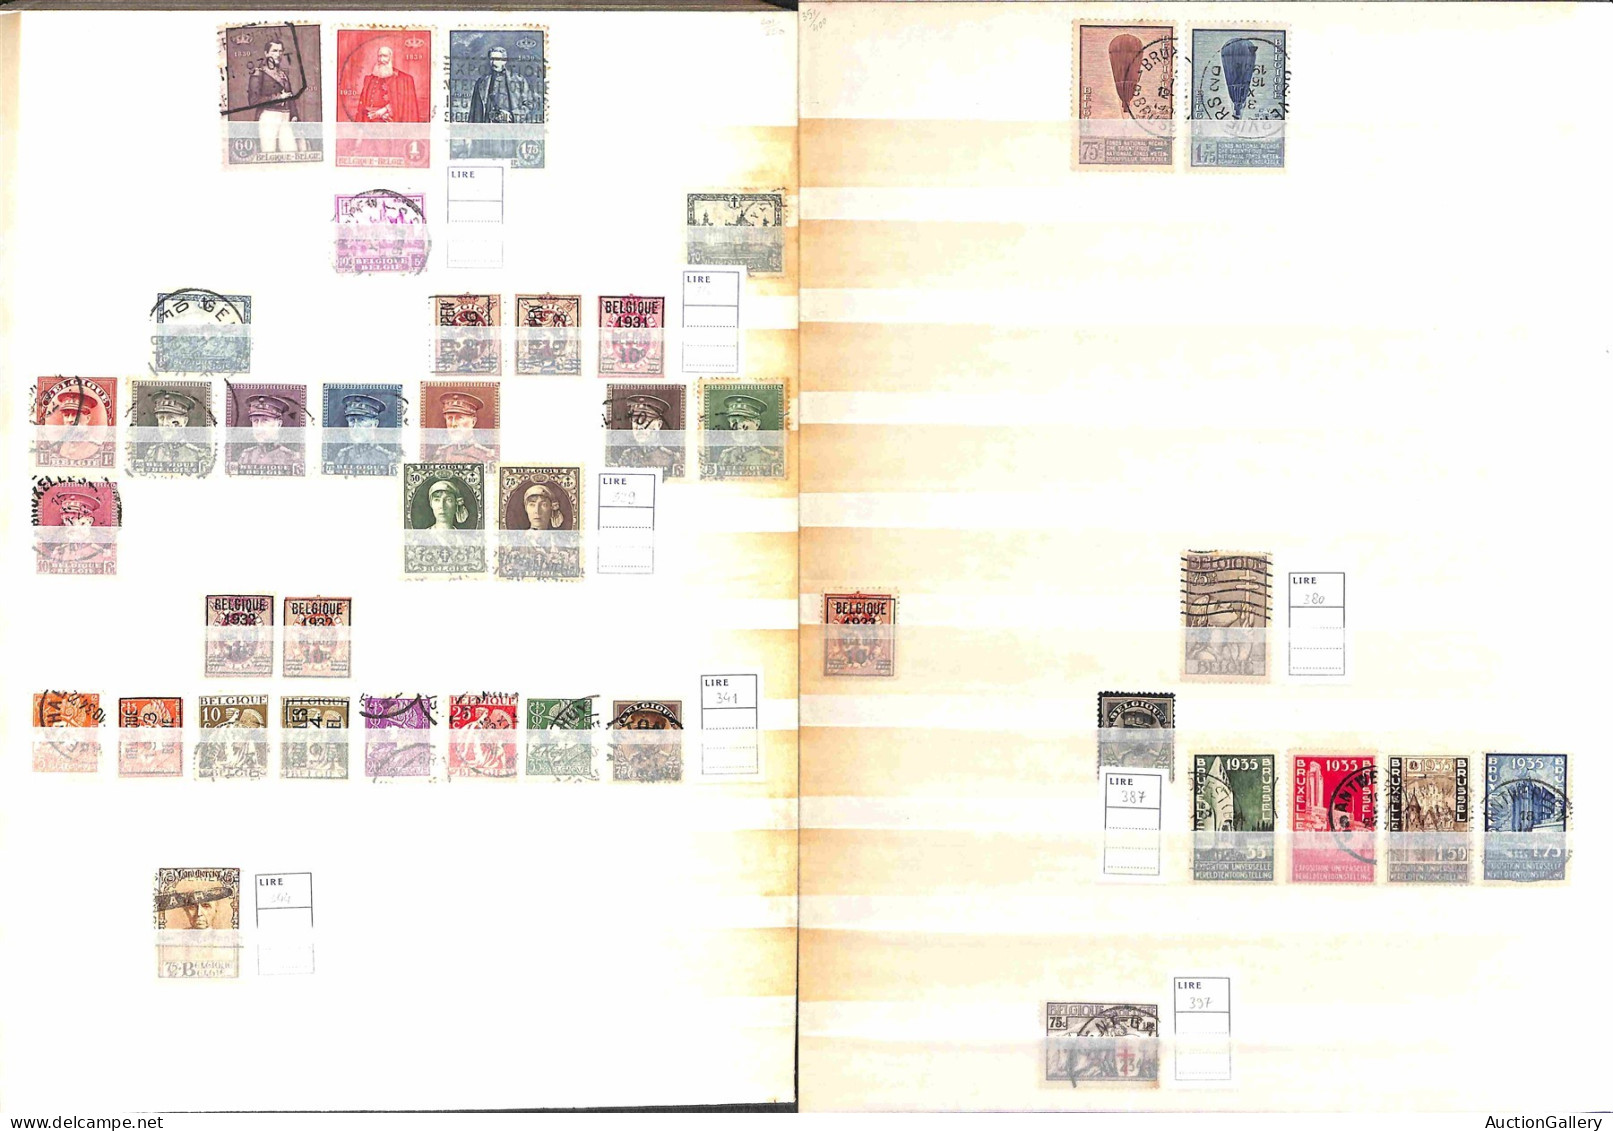 Lotti e Collezioni - Europa e Oltremare - BELGIO - 1849/1991 - Collezione di valori serie complete e alcuni foglietti de